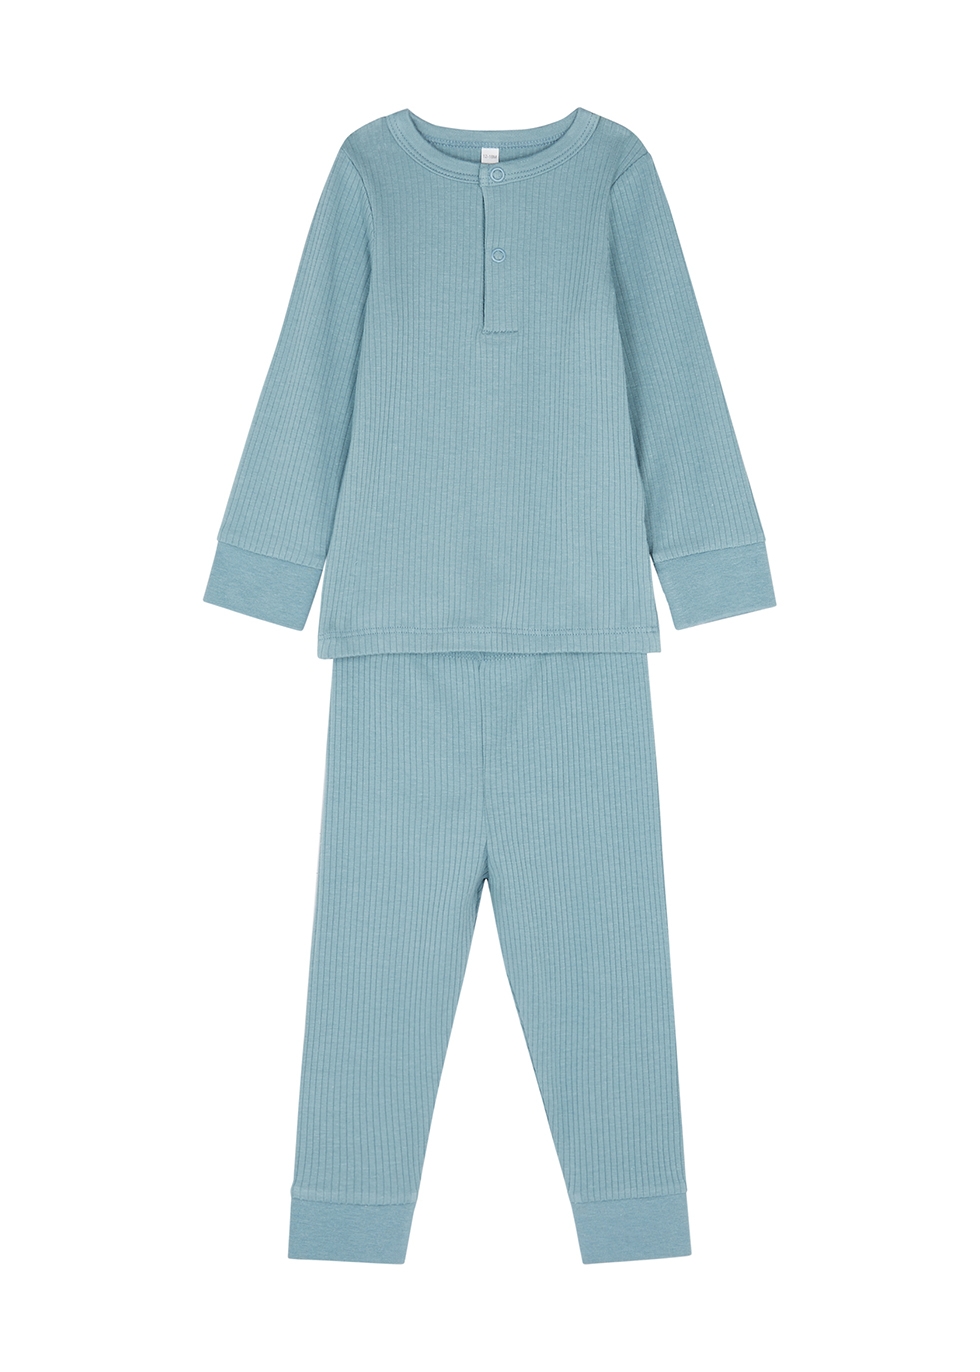 Mori Babies' Blue Ribbed Jersey Pyjama Set (9-18 Months)